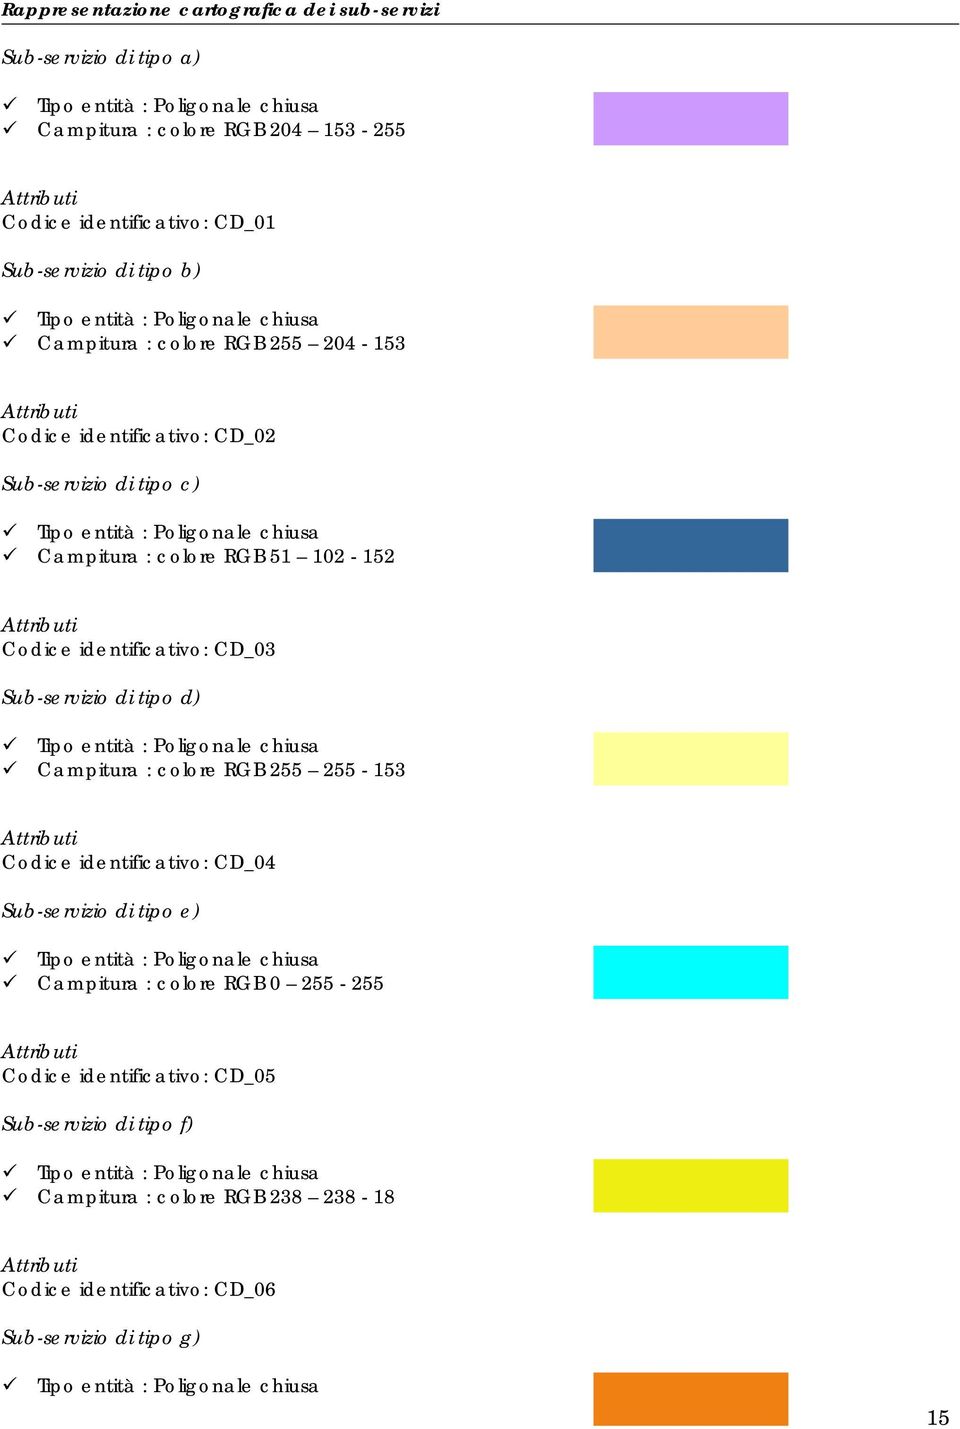 Sub-servizio di tipo d) Campitura : colore RGB 255 255-153 Codice identificativo: CD_04 Sub-servizio di tipo e) Campitura : colore RGB 0